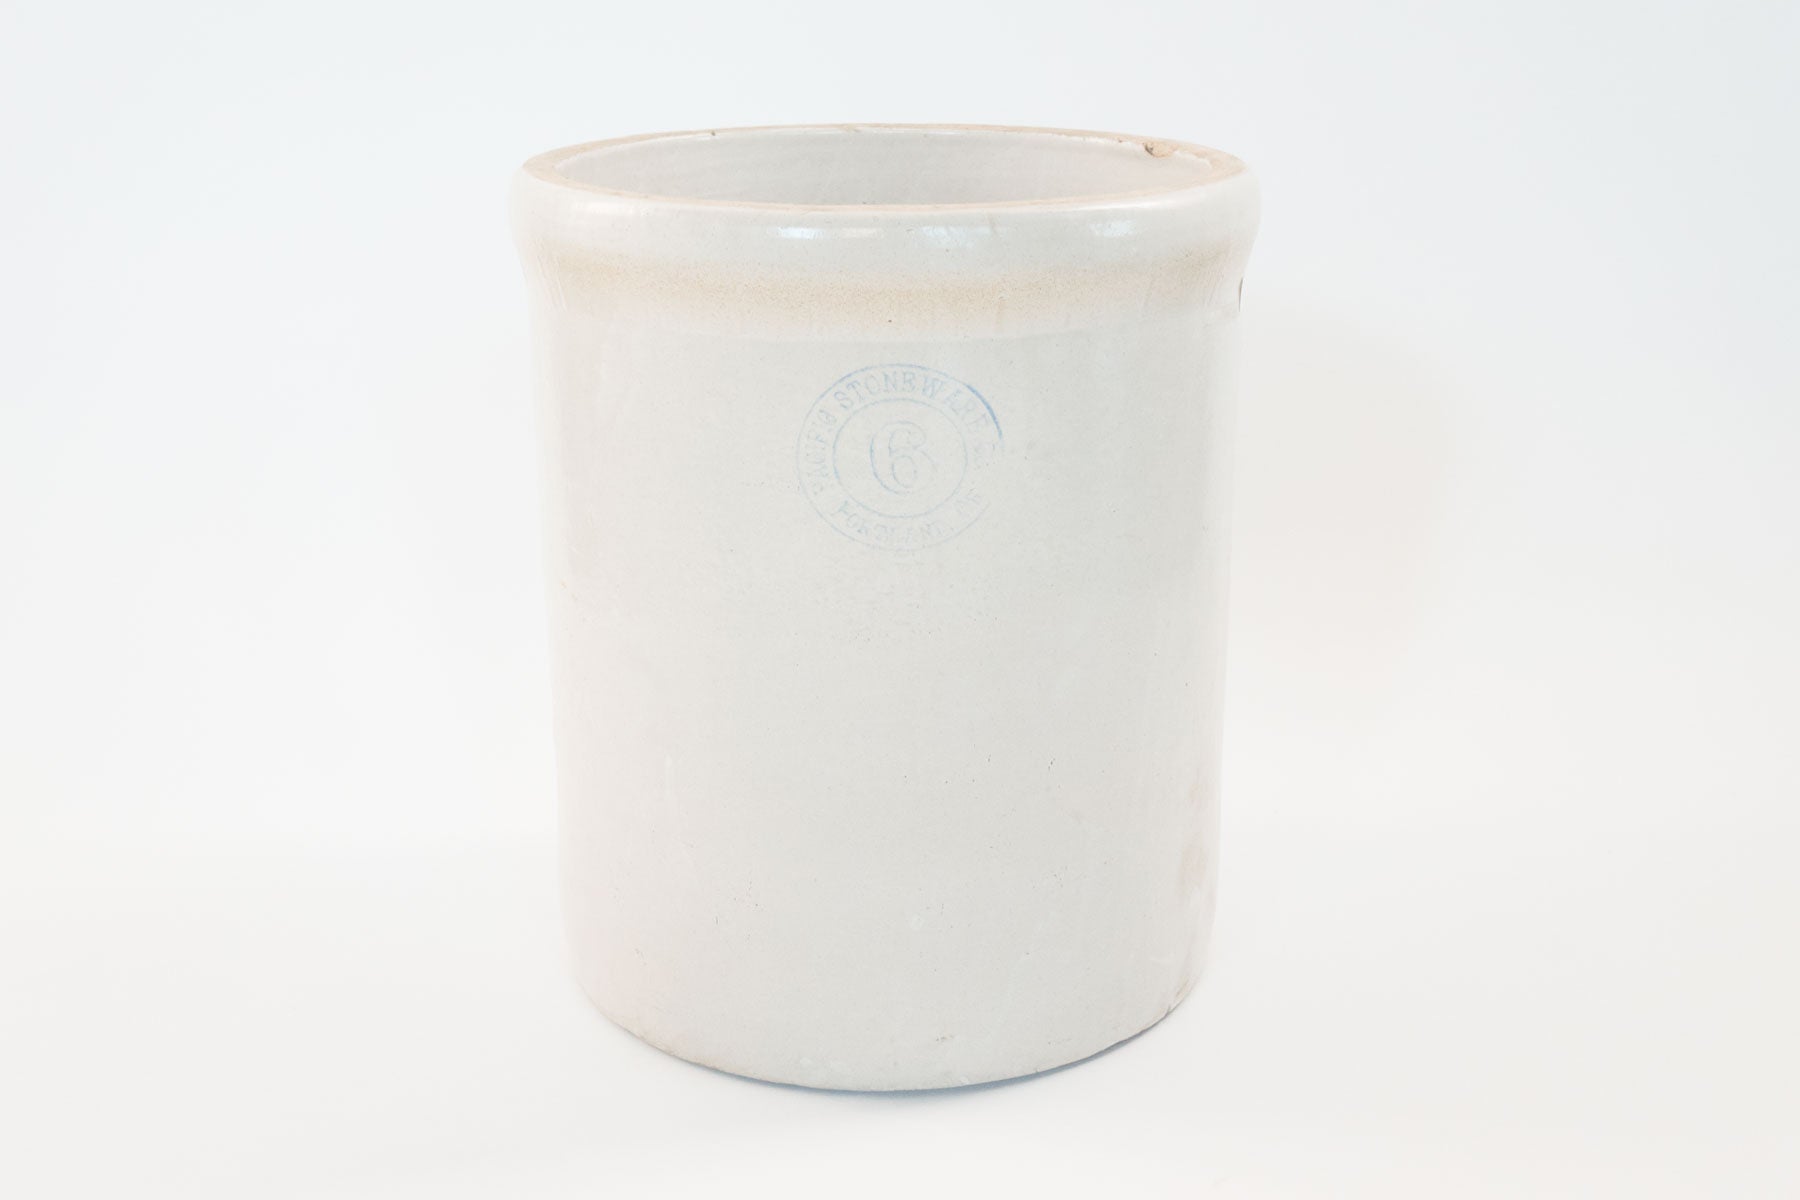 White Stoneware - 6 Quart 130001000000 - OEM Crock-Pot 